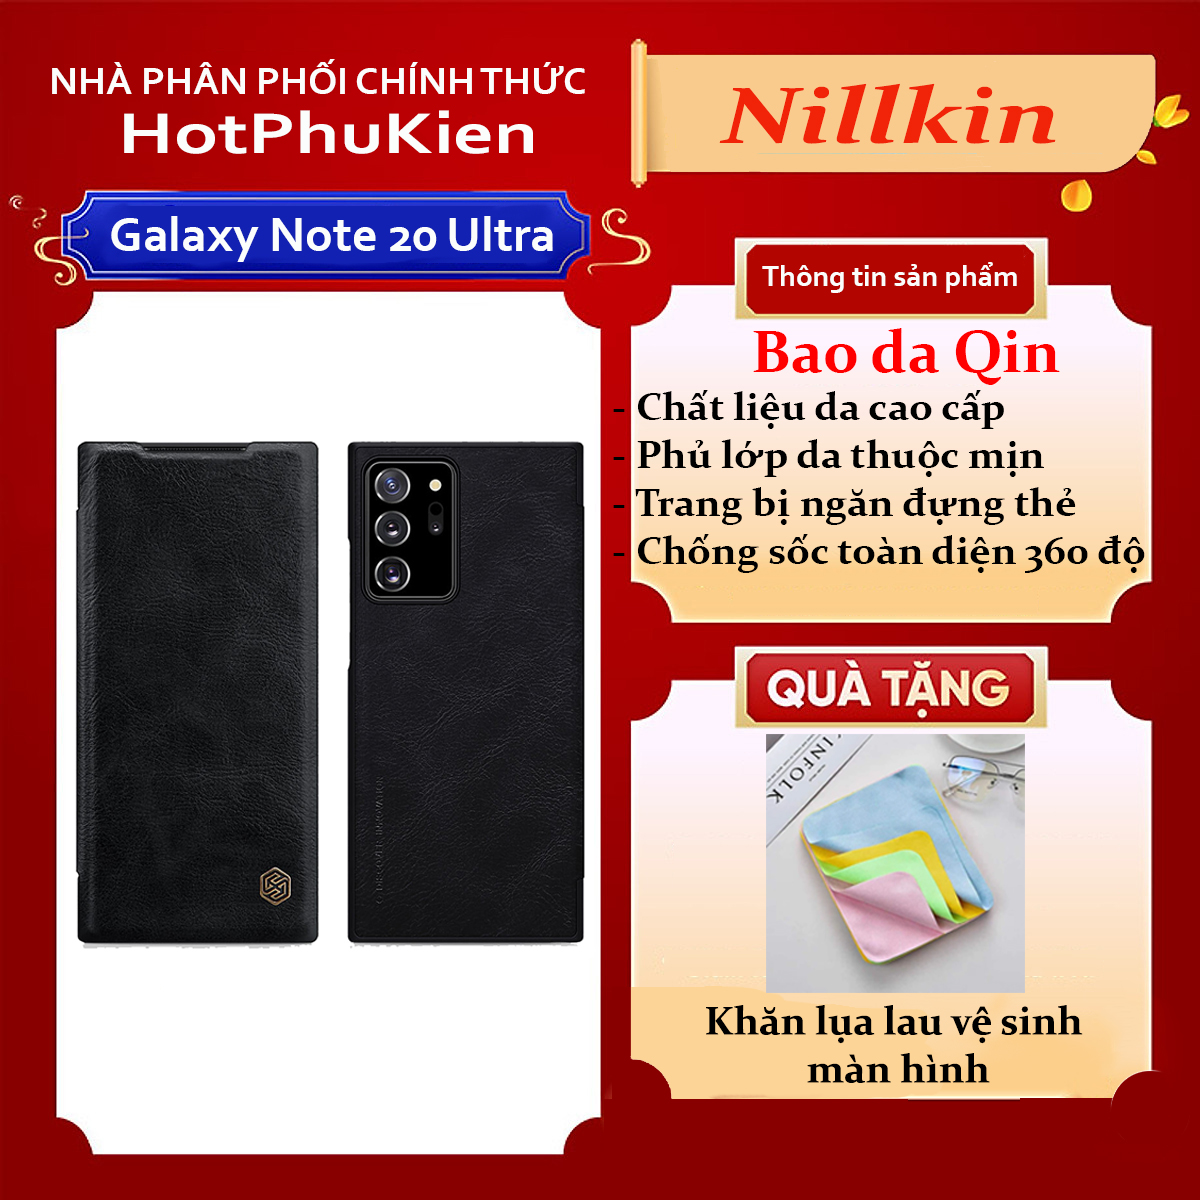 Case bao da leather chống sốc cho Samsung Galaxy Note 20 Ultra hiệu Nillkin Qin (Chất liệu da cao cấp, có ngăn đựng thẻ, mặt da siêu mềm mịn) - hàng nhập khẩu